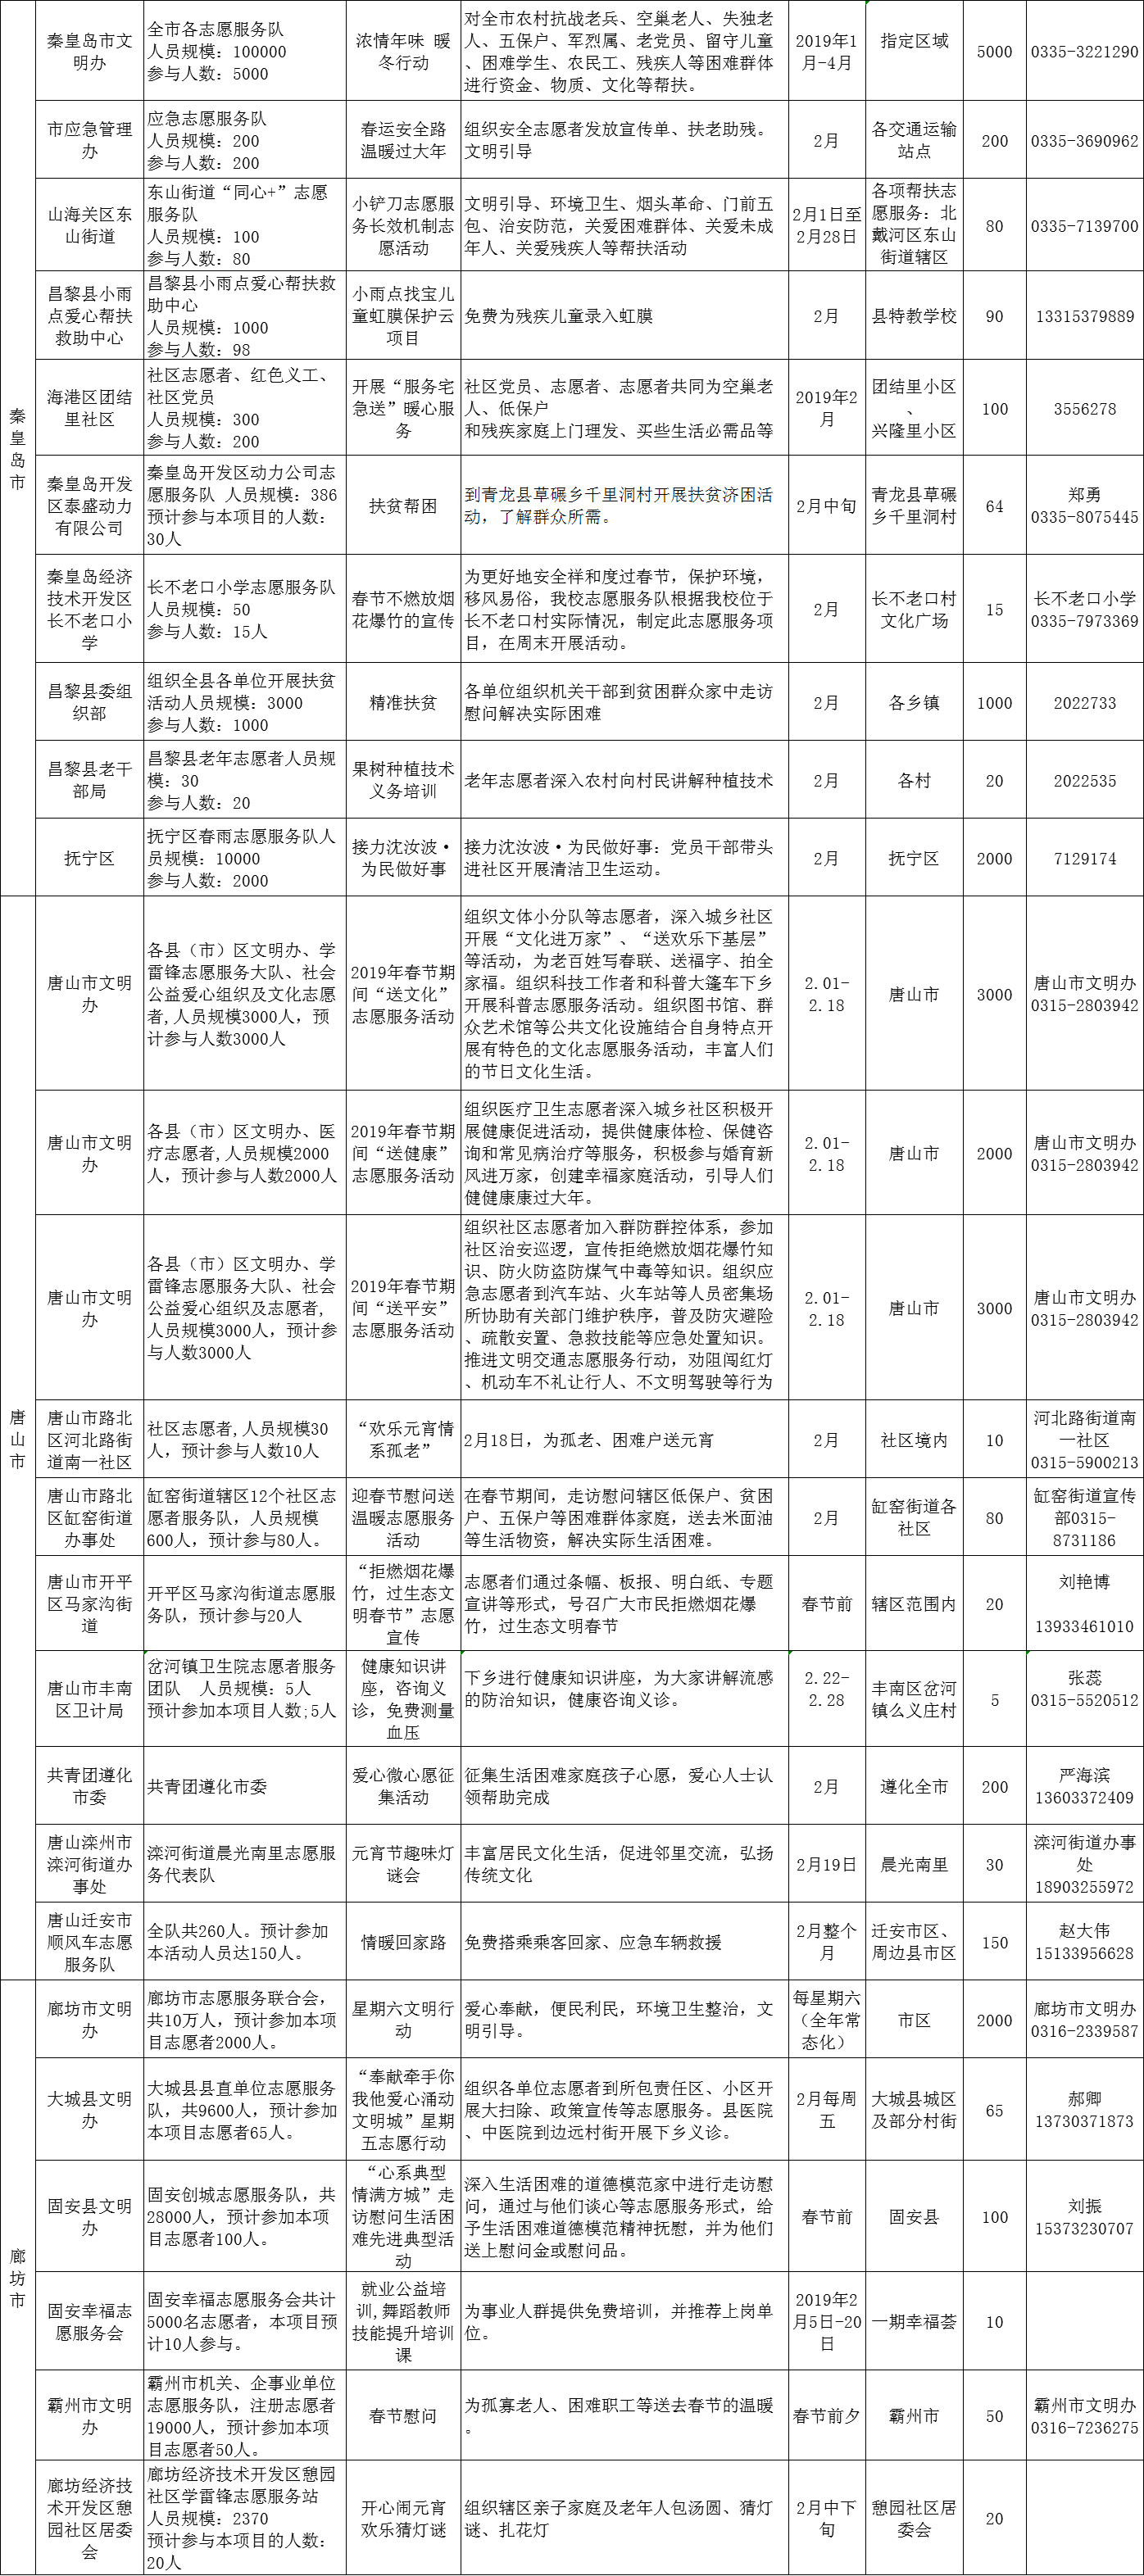 河北省文明办发布2019年2月志愿服务项目